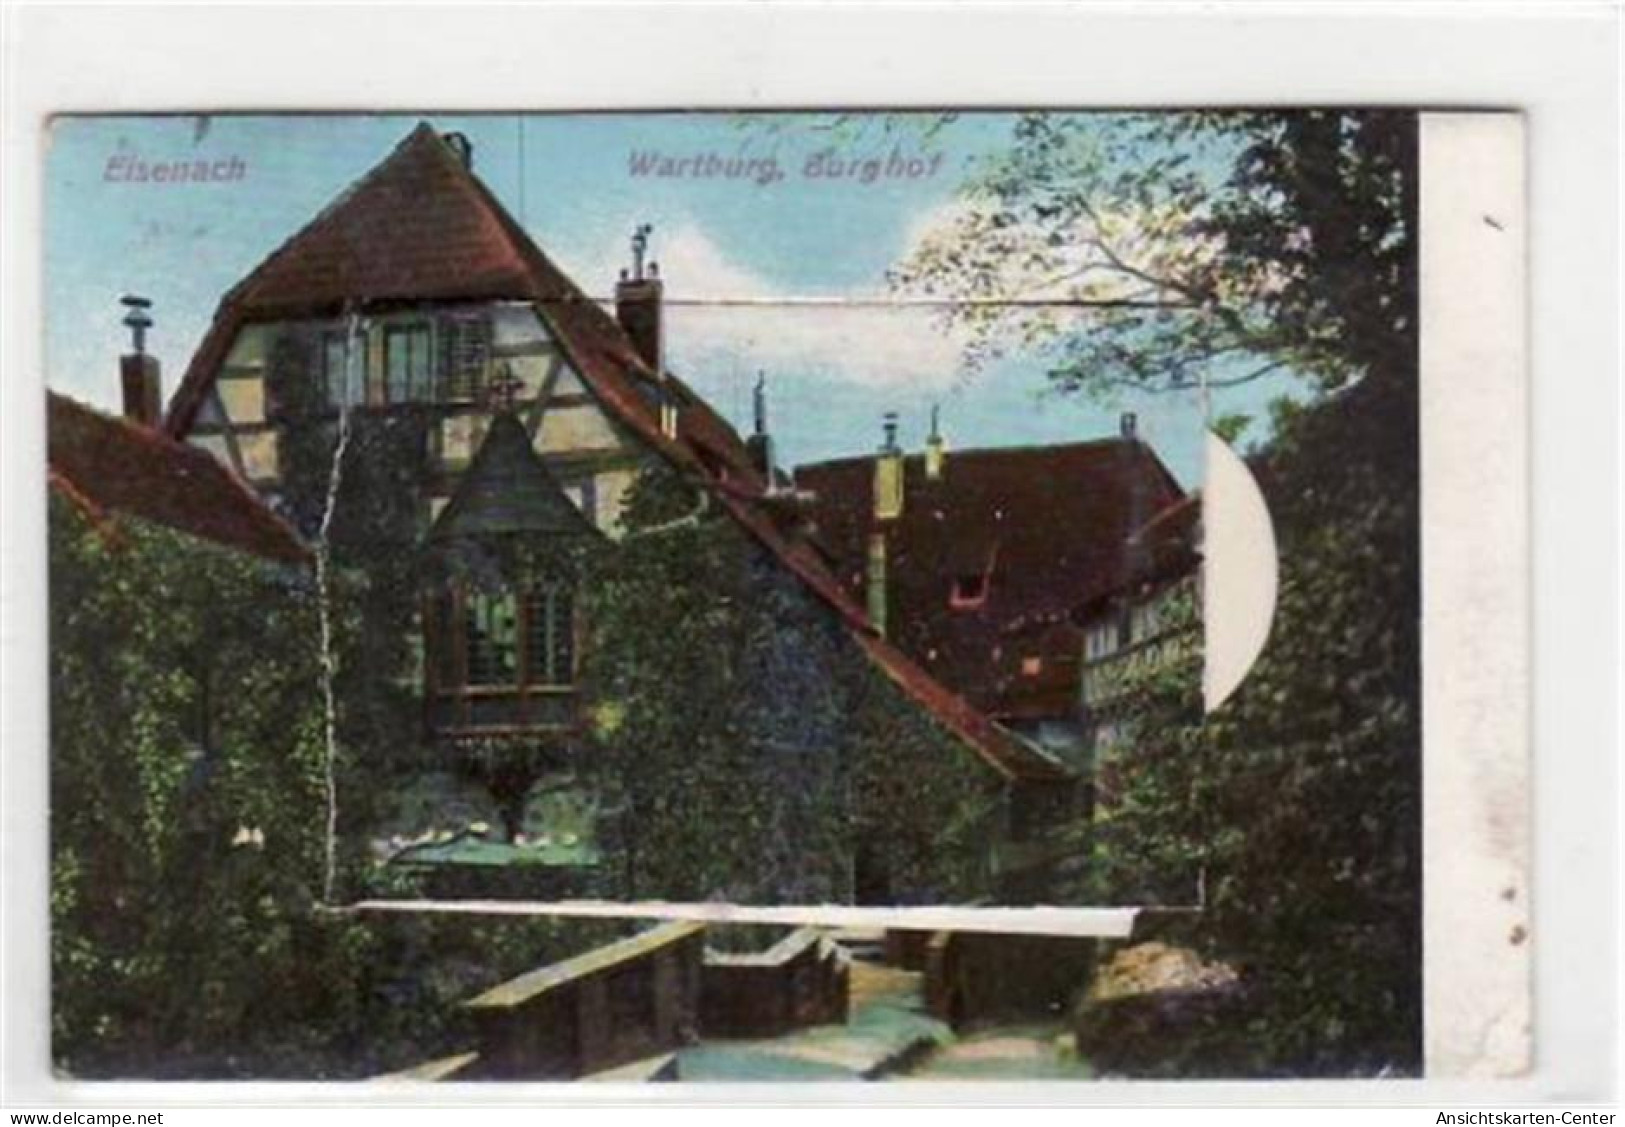 39002608 - Leporellokarte Von Eisenach I. Thuer. Burghof Der Wartburg Gelaufen 1916. Gute Erhaltung. - Eisenach